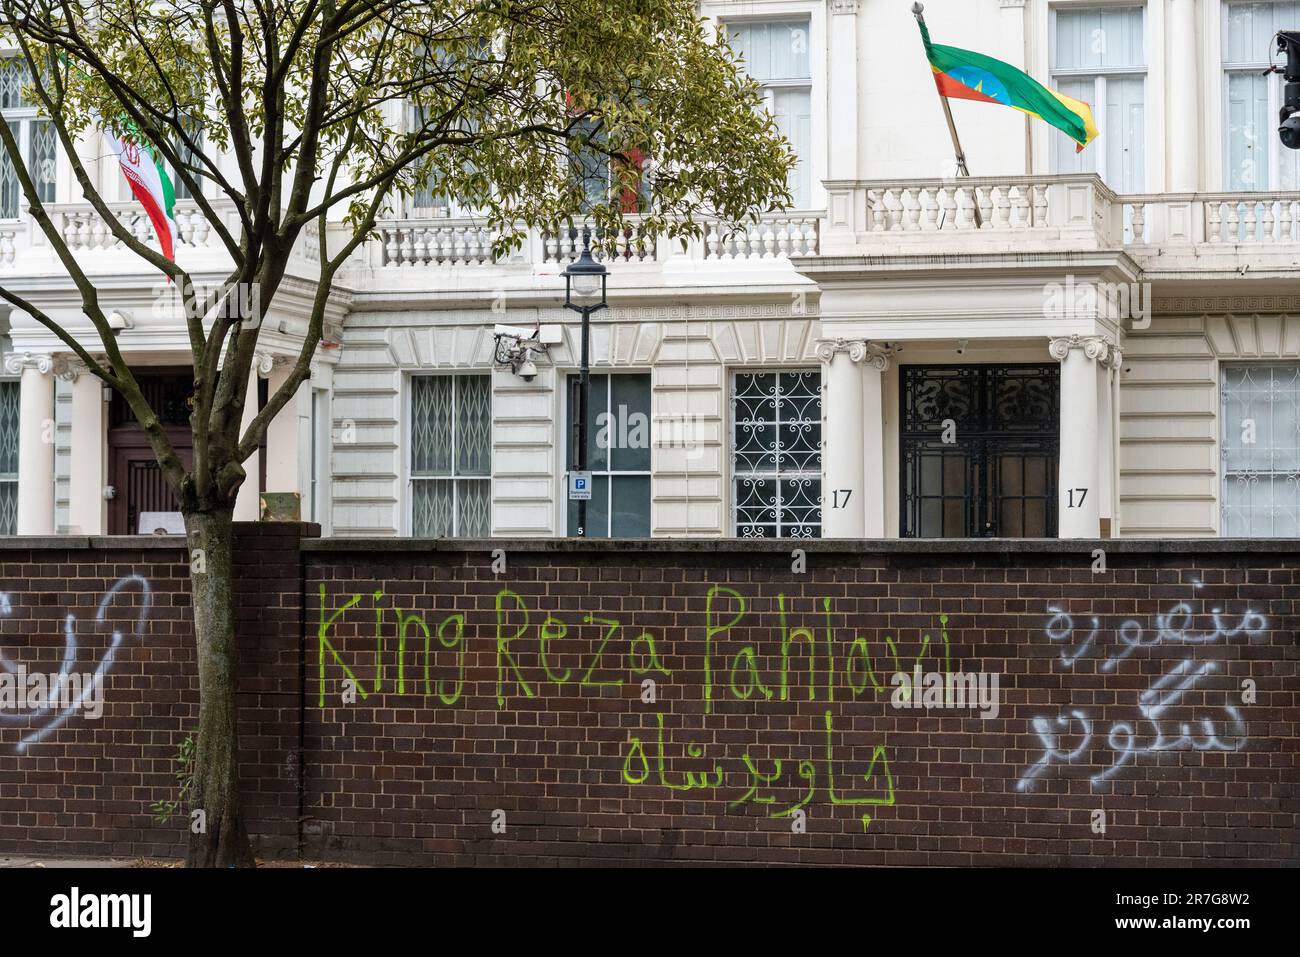 Graffiti à l'extérieur de l'ambassade de la République islamique d'Iran, Londres, protestant en faveur du peuple kurde. Référence du roi Mohammad Reza Pahlavi Banque D'Images